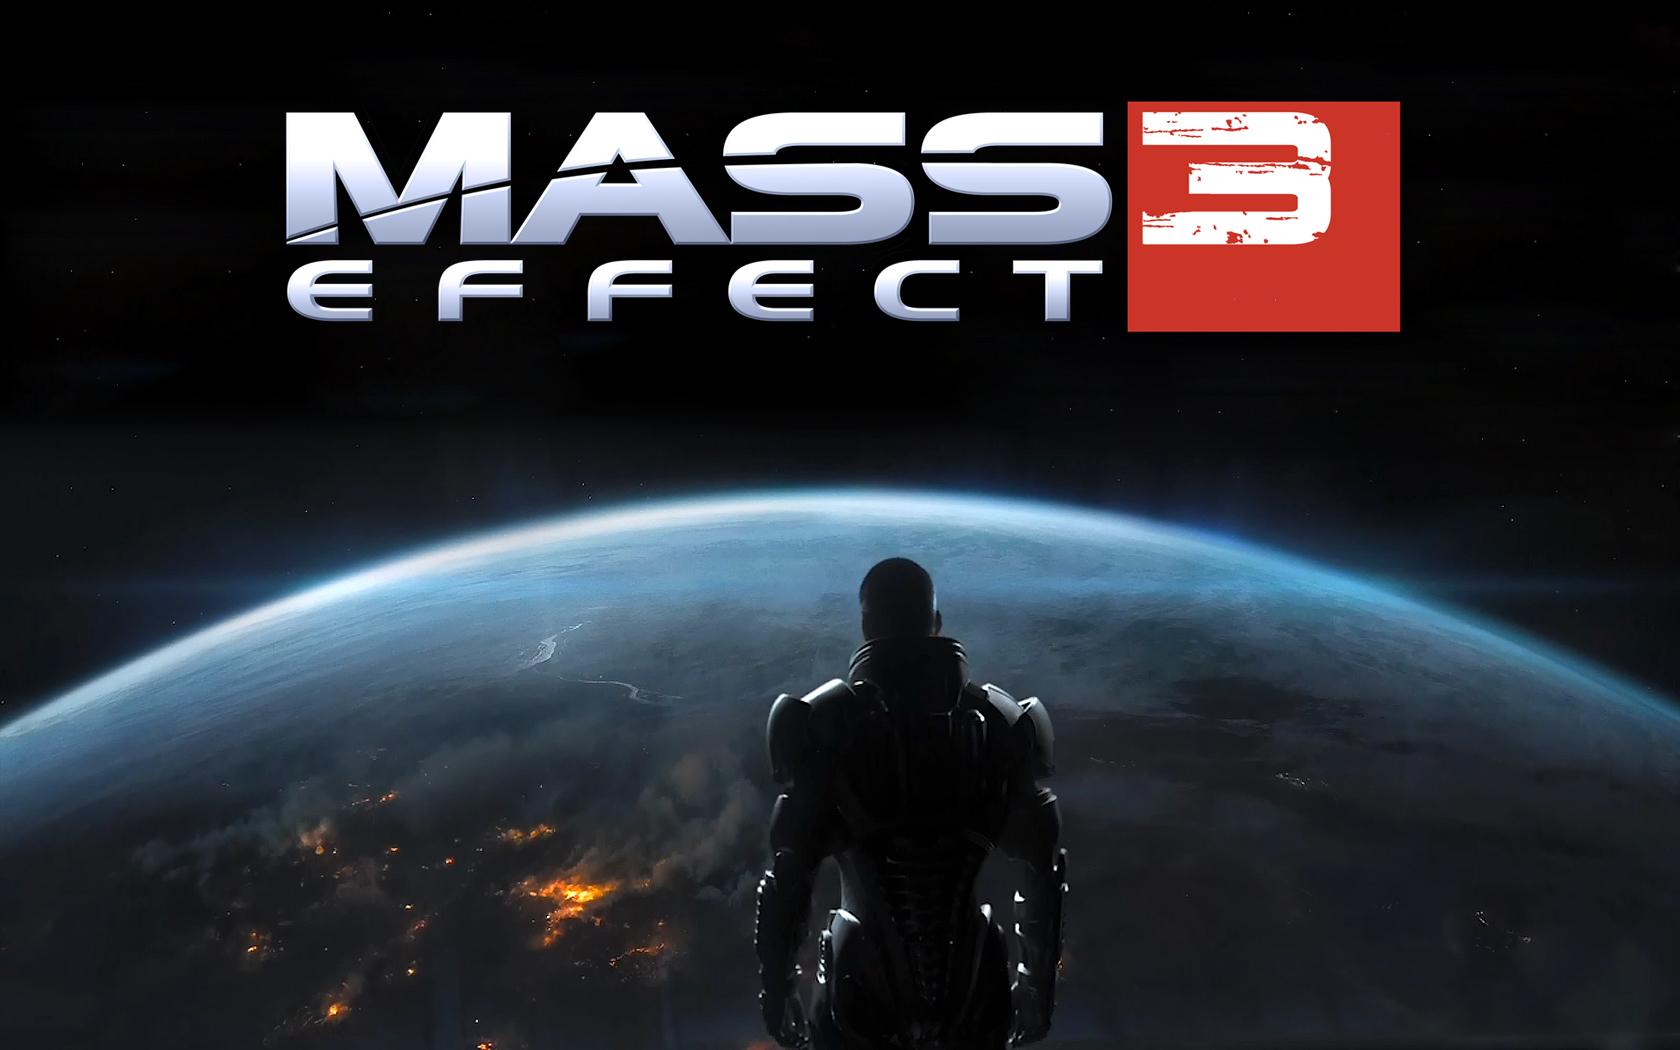 Download the Mass Effect 3 Wallpaper, Mass Effect 3 iPhone